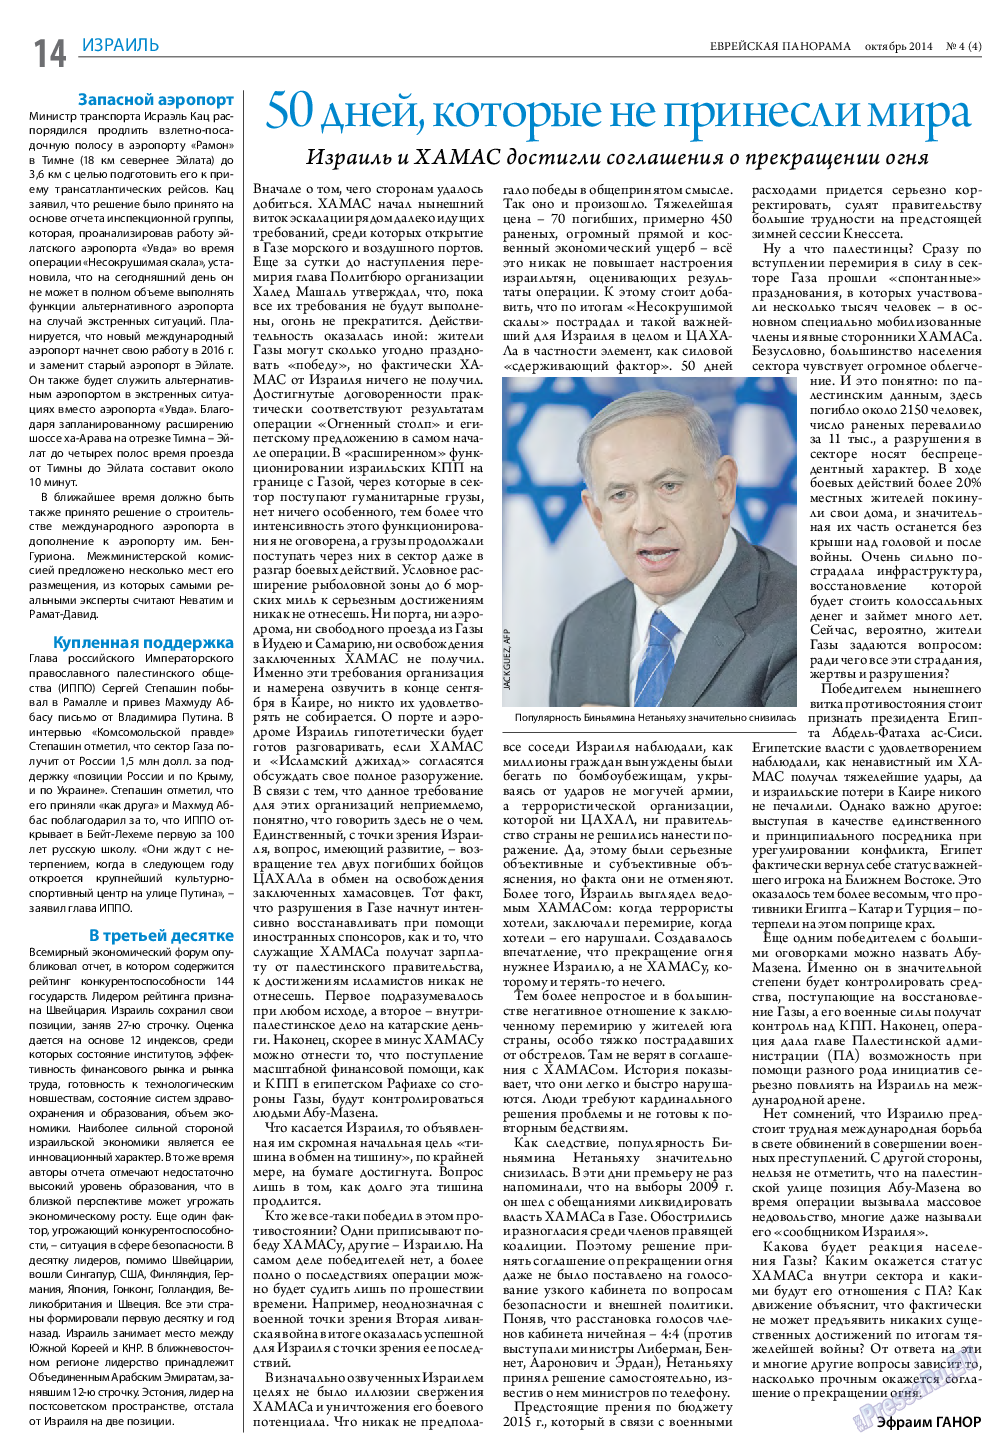 Еврейская панорама (газета). 2014 год, номер 4, стр. 14